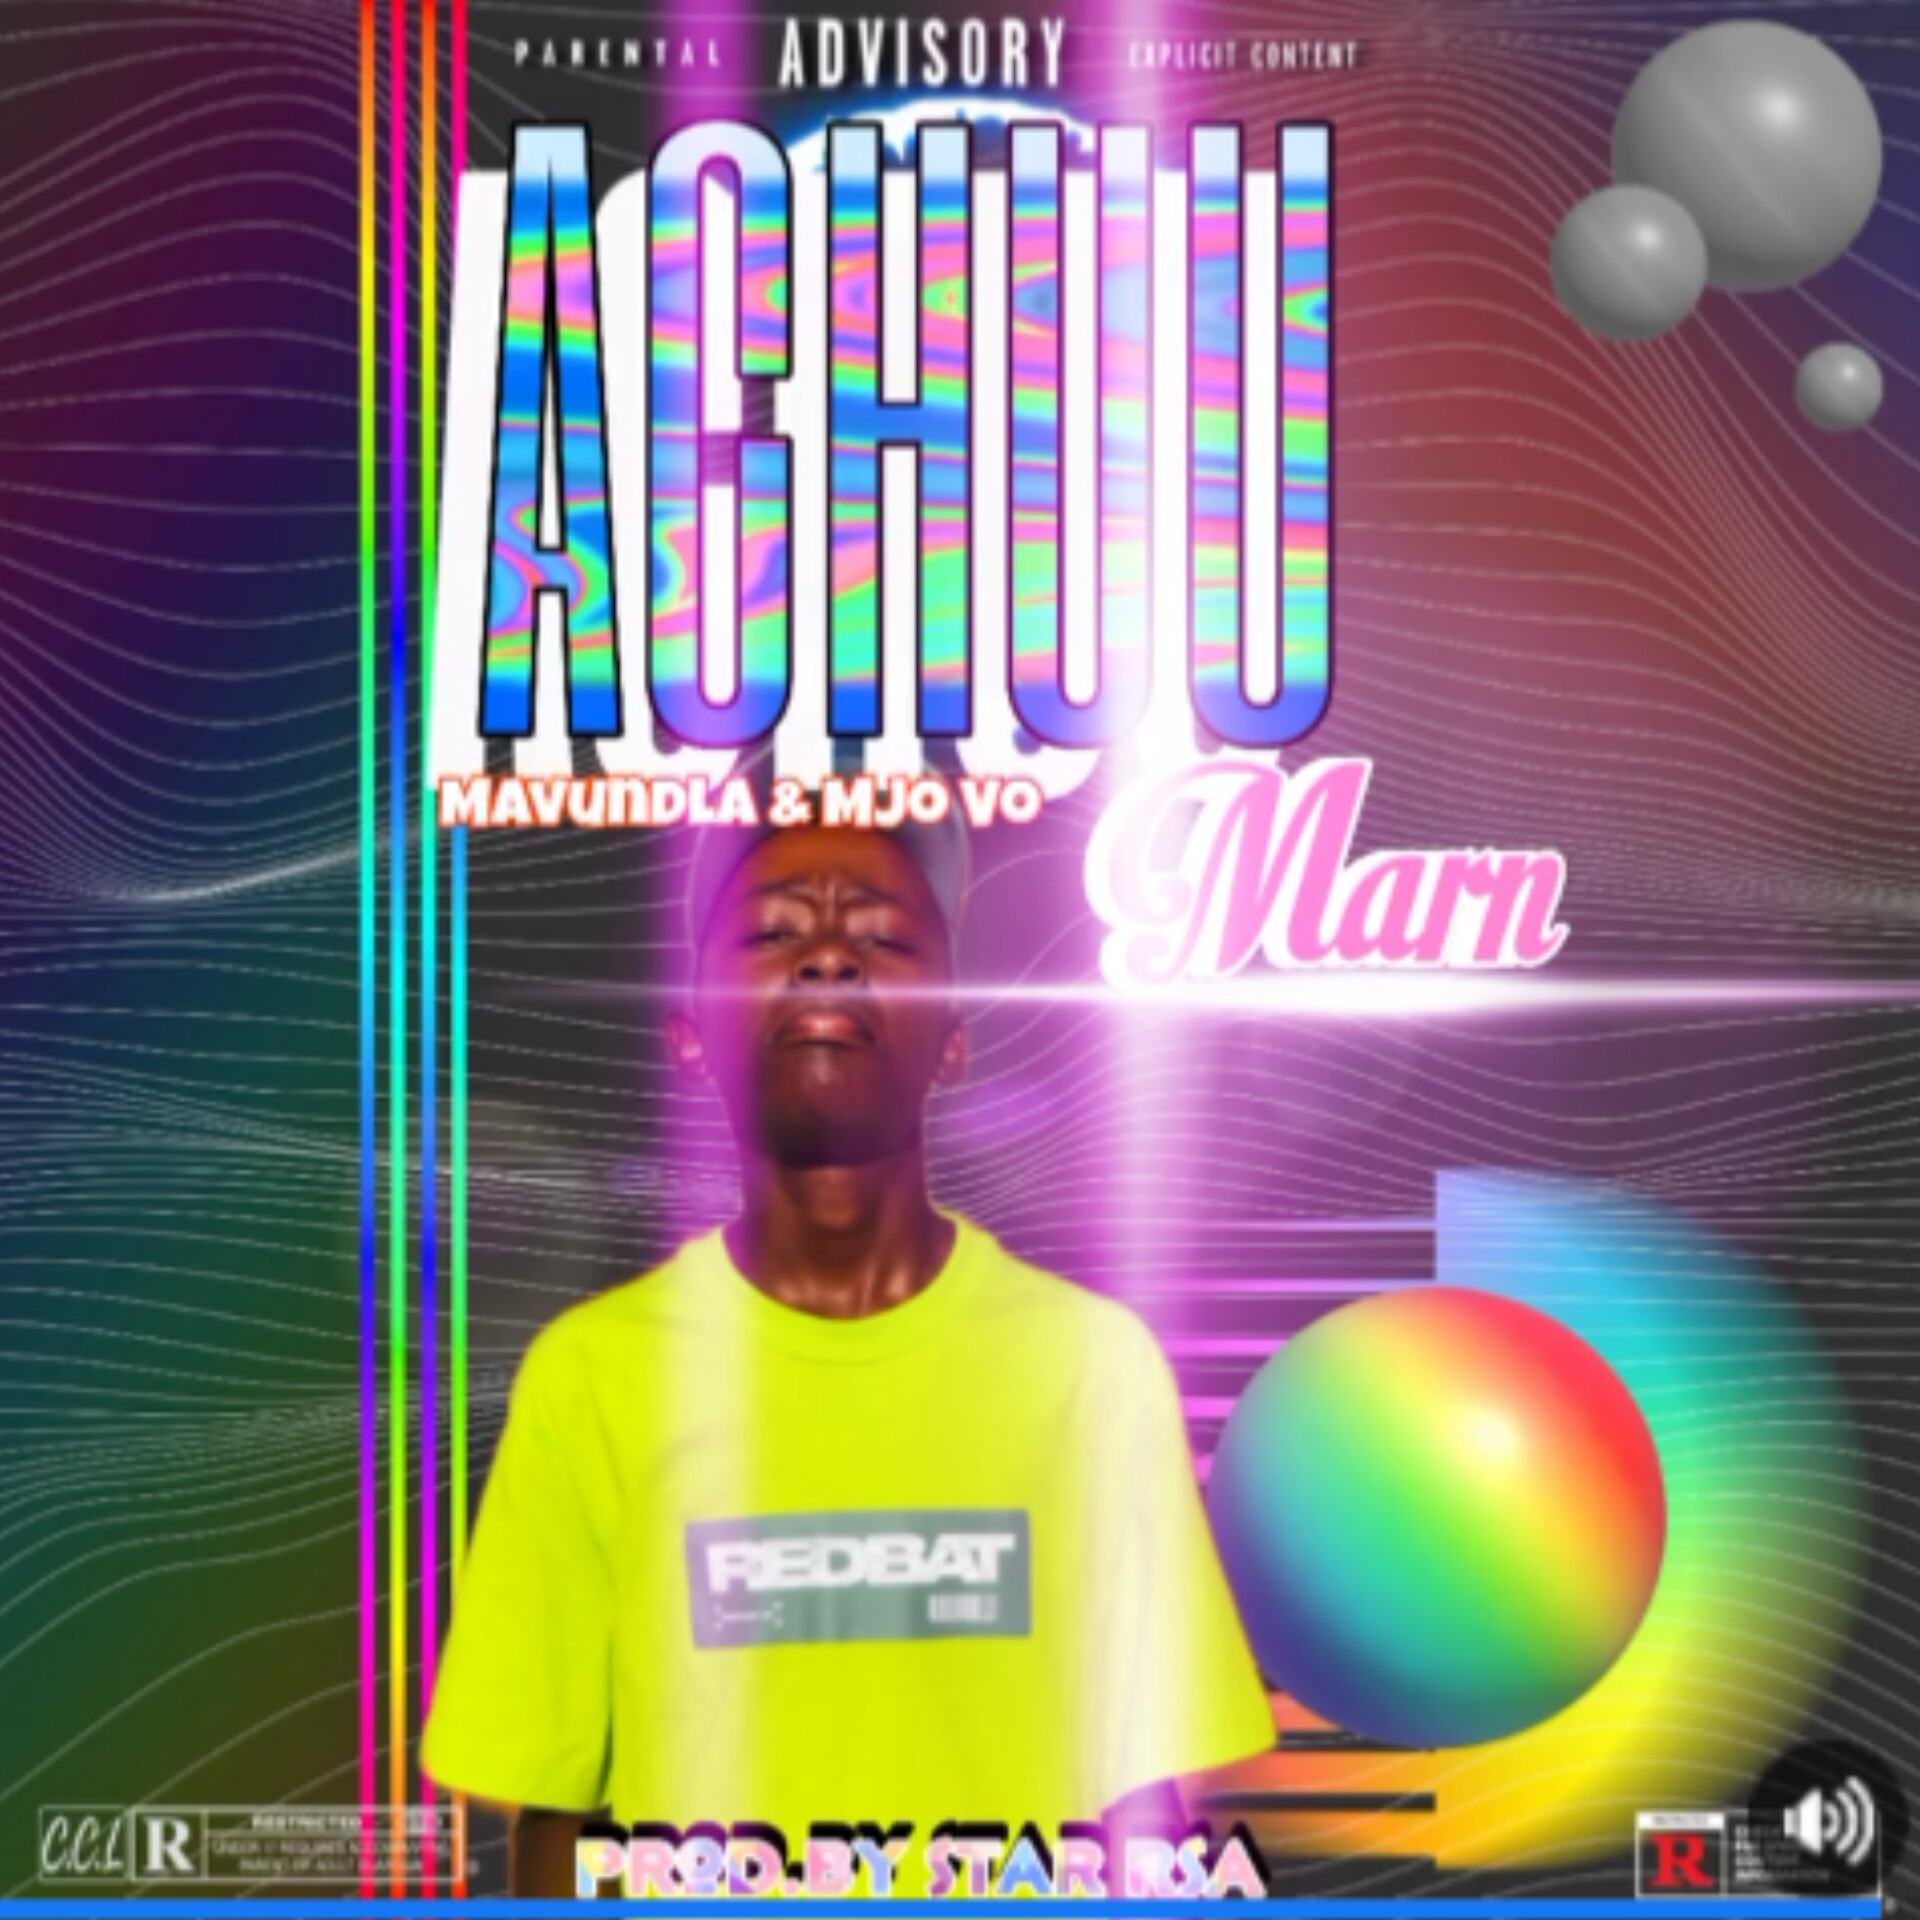 Achuu Marn (Feat.MjoVo & Mavundla) - Star Rsa